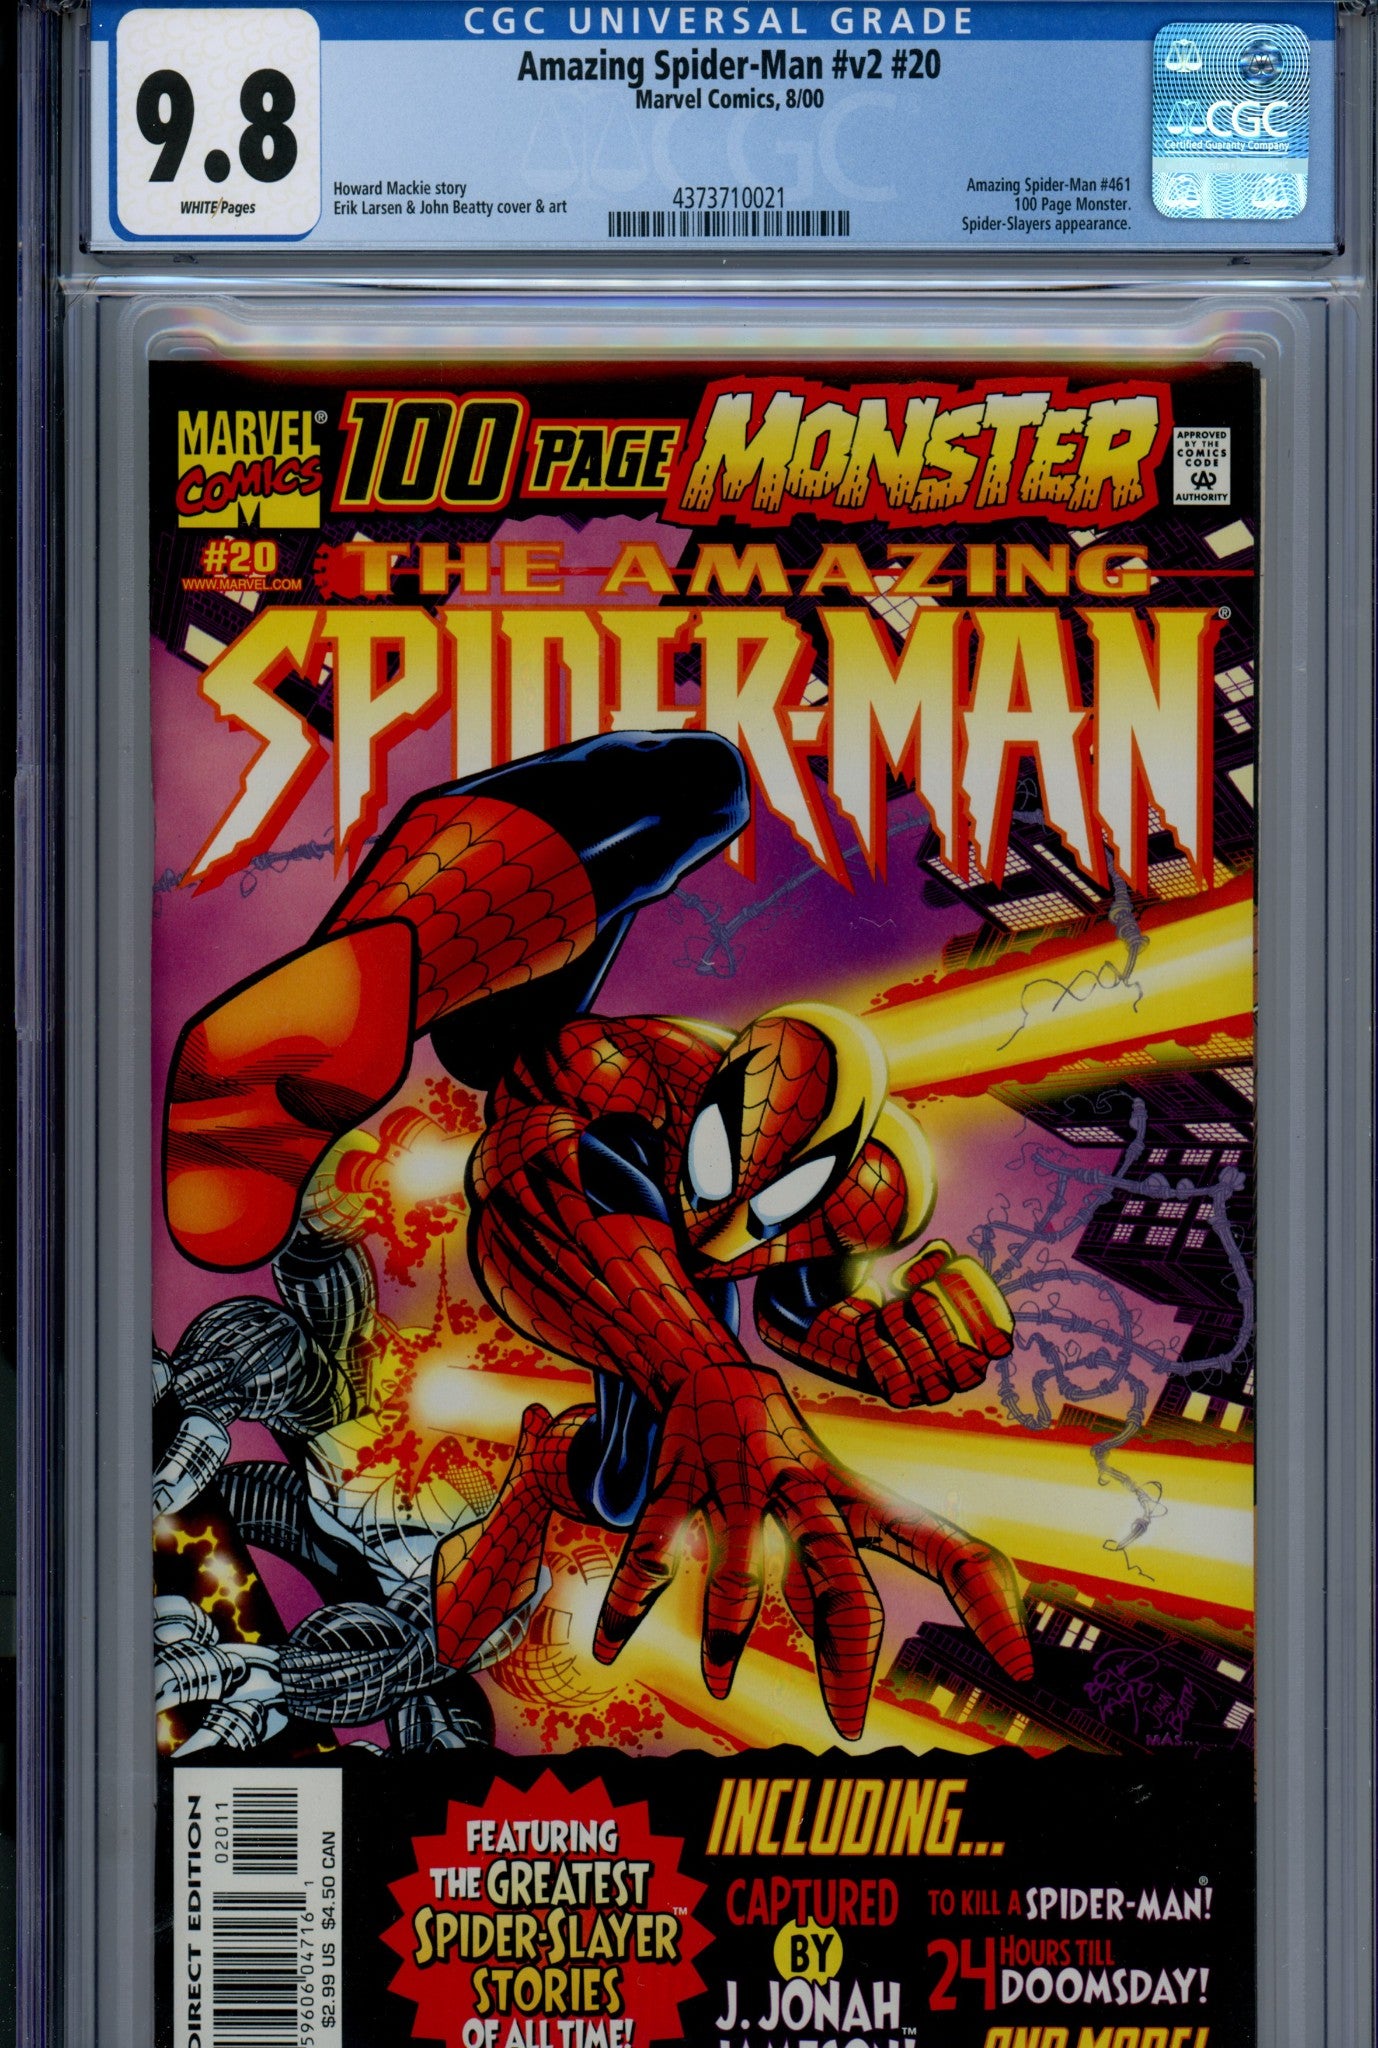 The Amazing Spider-Man Vol 2 20 CGC 9.8 (NM/M) (2000) 